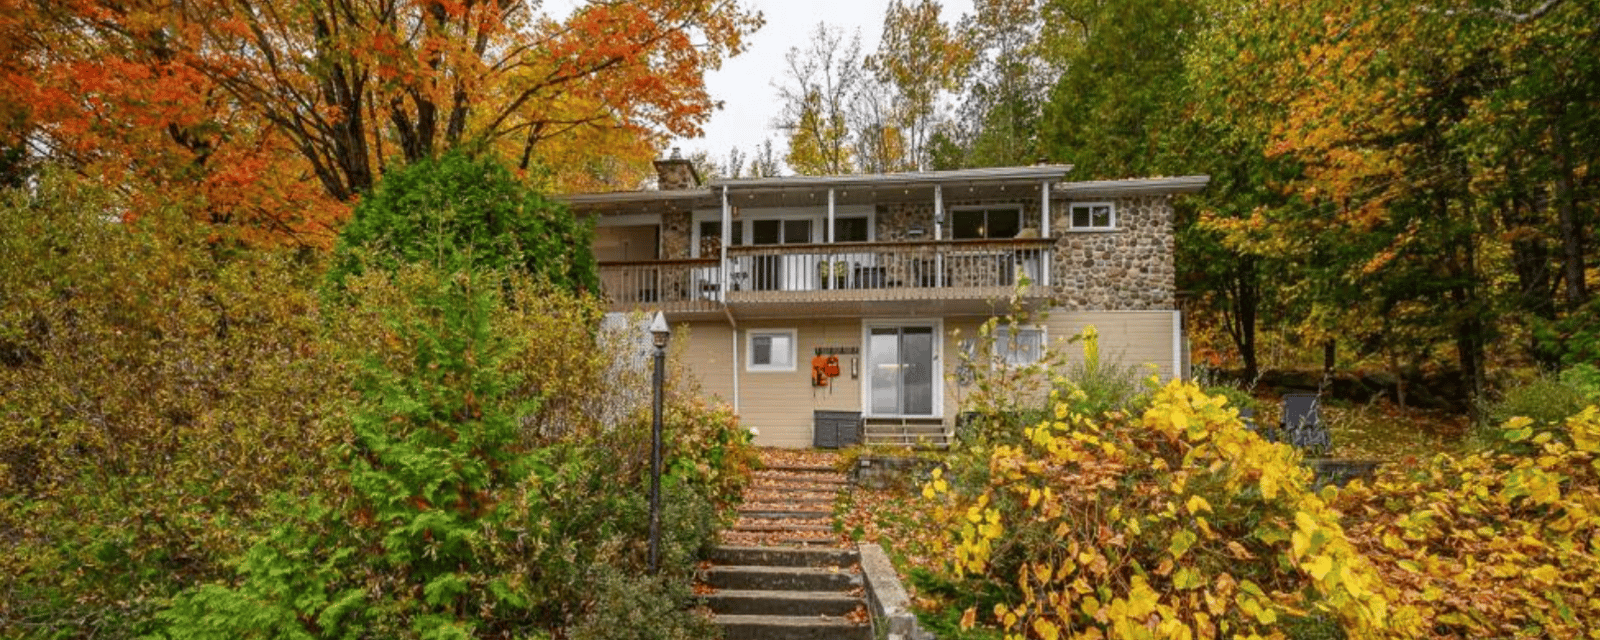 Vendue meublée ! Coquette maison près des montagnes avec accès au lac à Mont-Tremblant